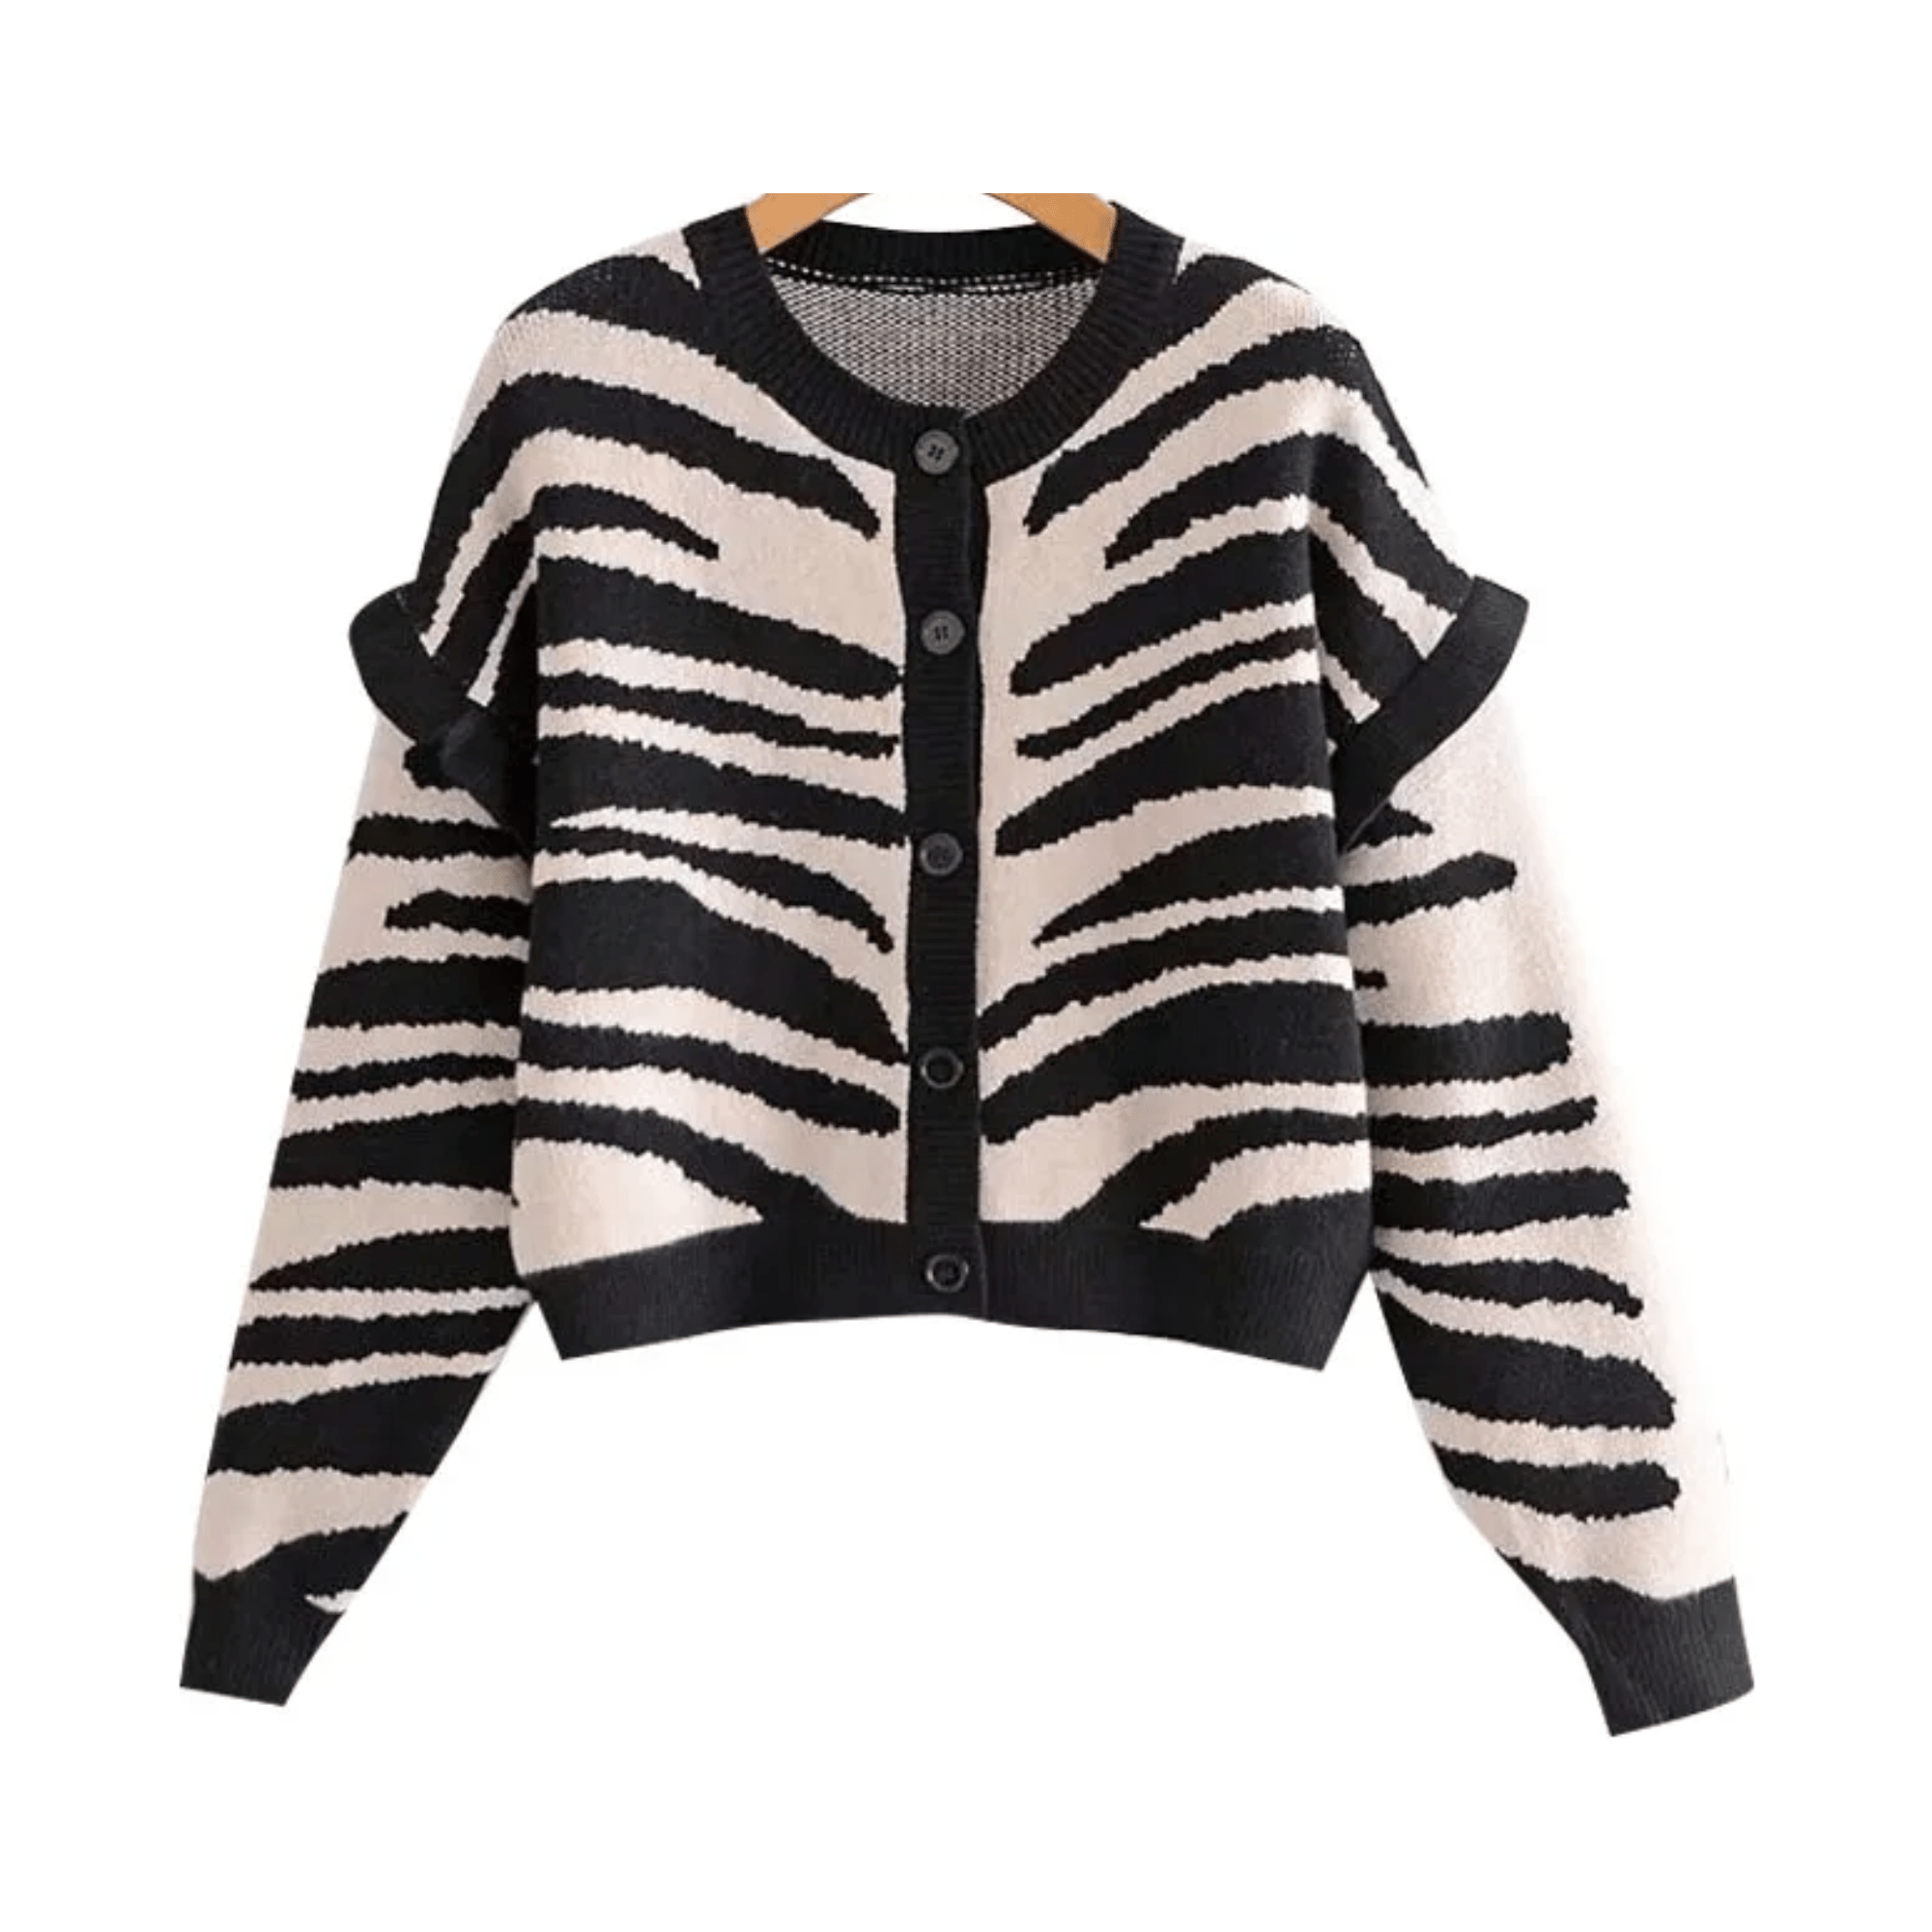 Zebra Cropped Knit Sweater - Kelly Obi New York